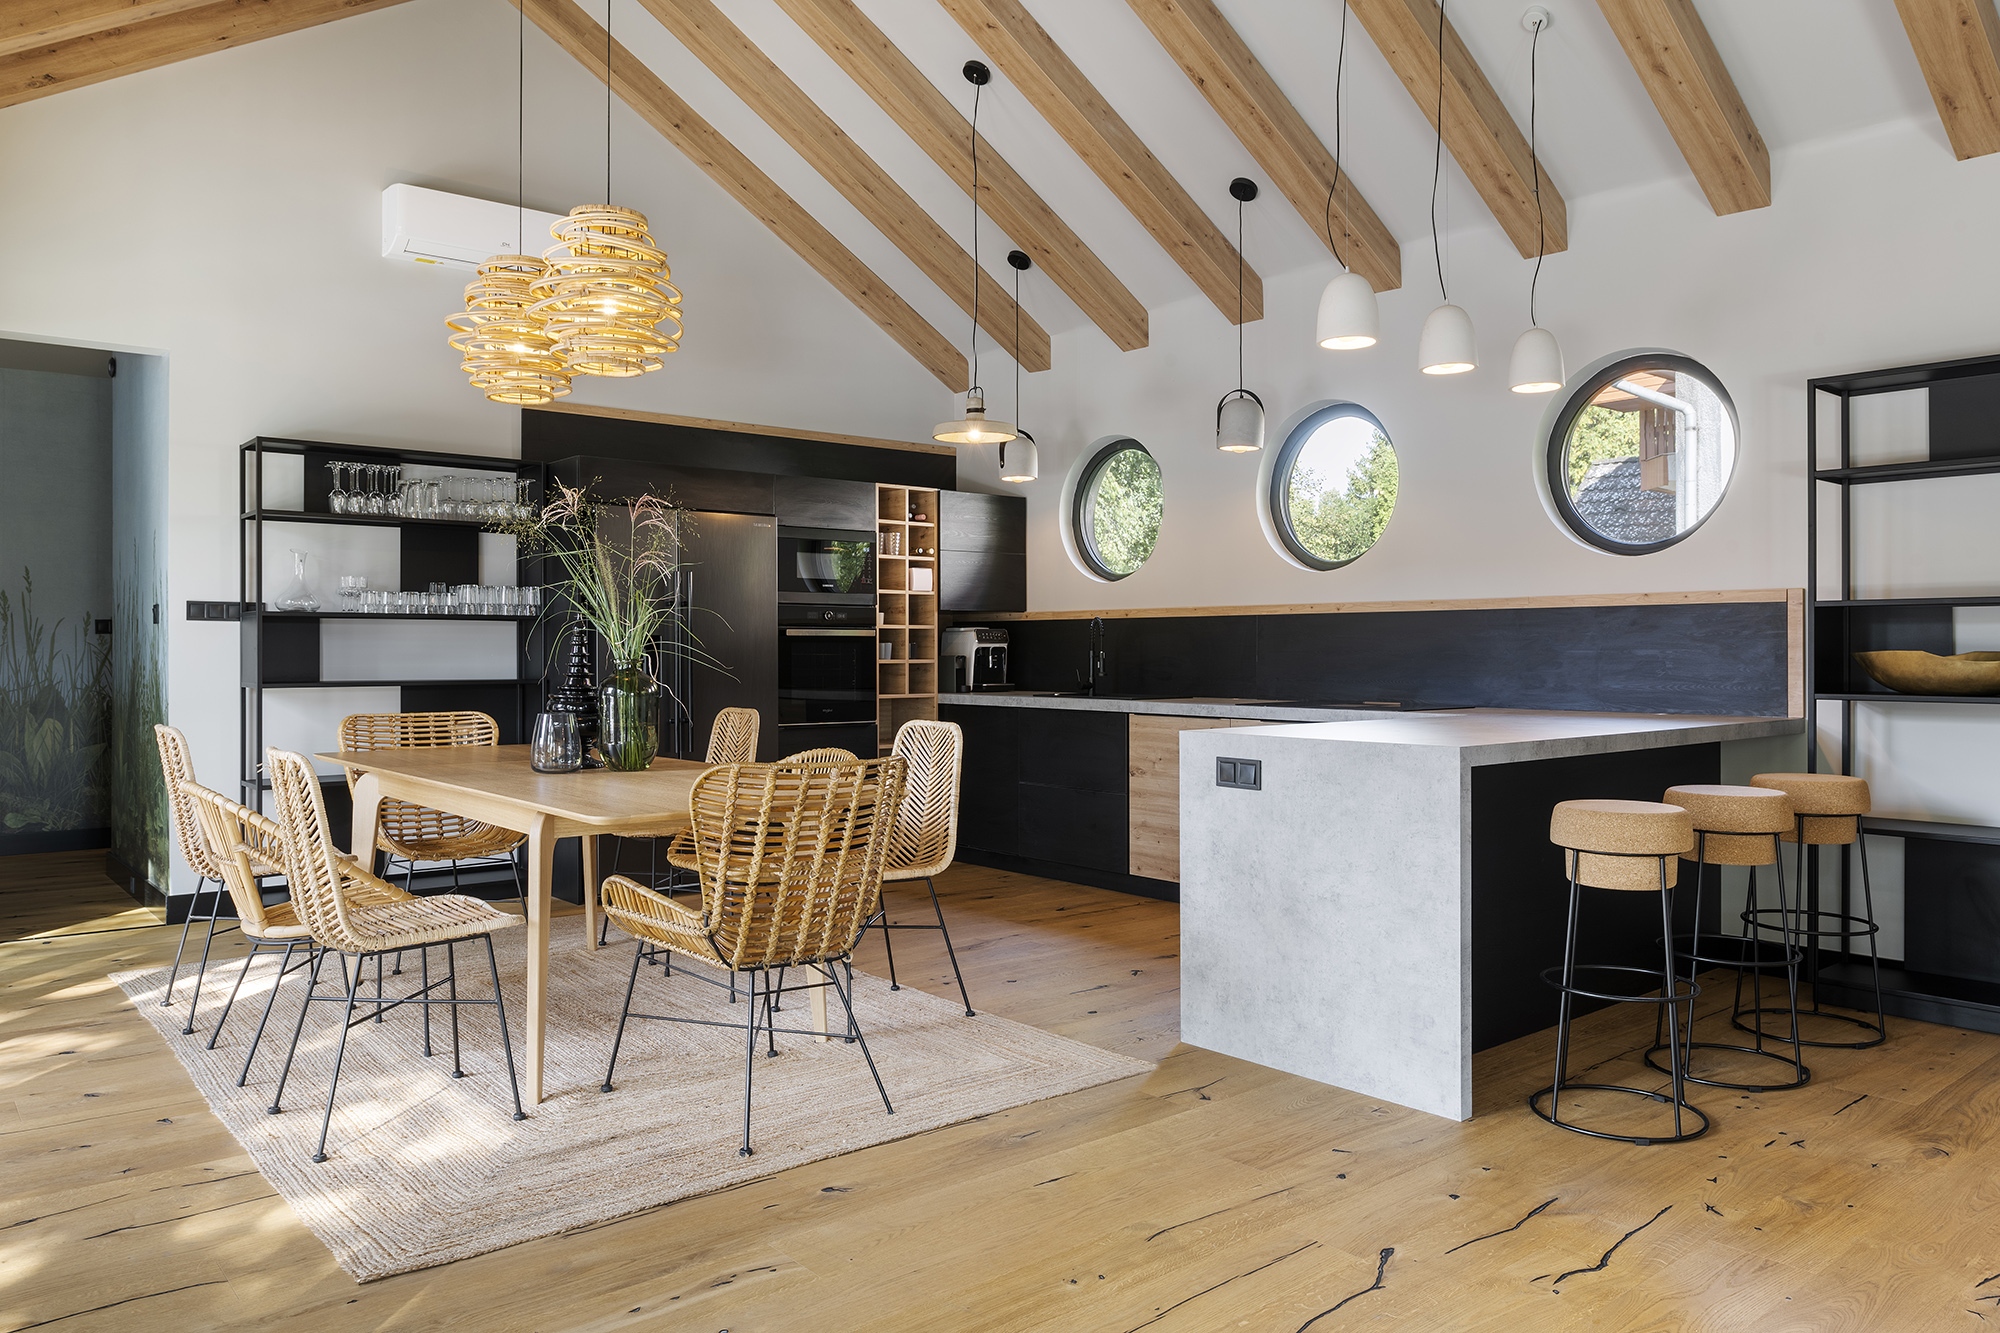  A nagyvonalú közösségi tér egyik részét a konyha és az étkező foglalja el természetes anyagokat felvonultató bútorokkal és függesztékekkel – ami hatásos kontrasztot képez a beépített bútorok fekete frontjaival és a beton konyhapulttal